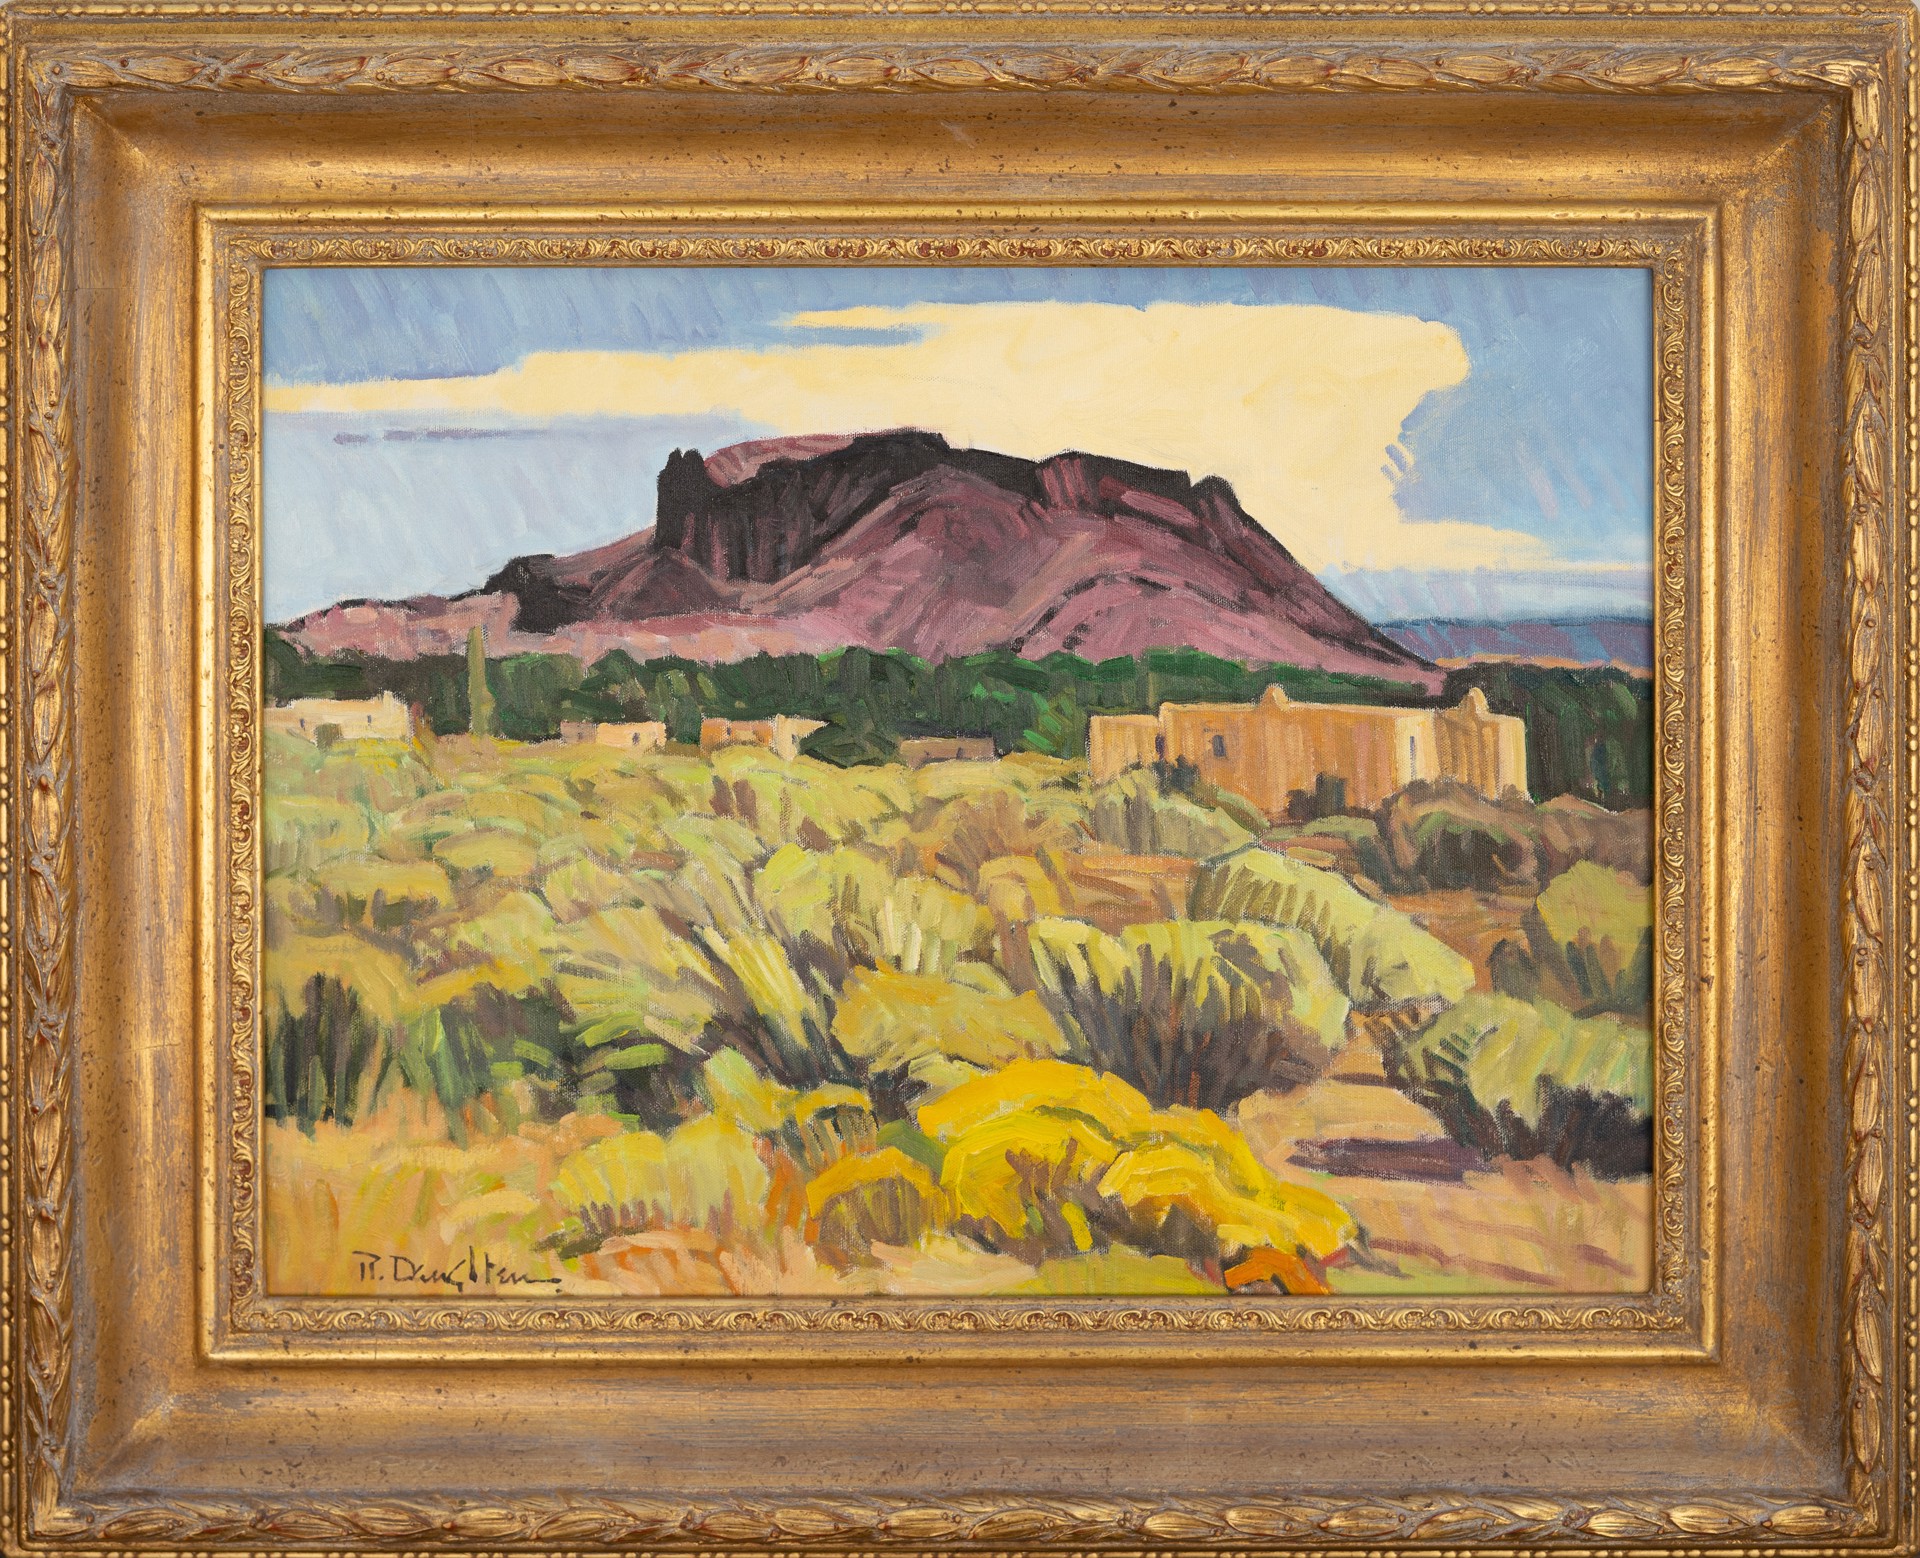 Black Mesa Vista by Robert Daughters (1929-2013)